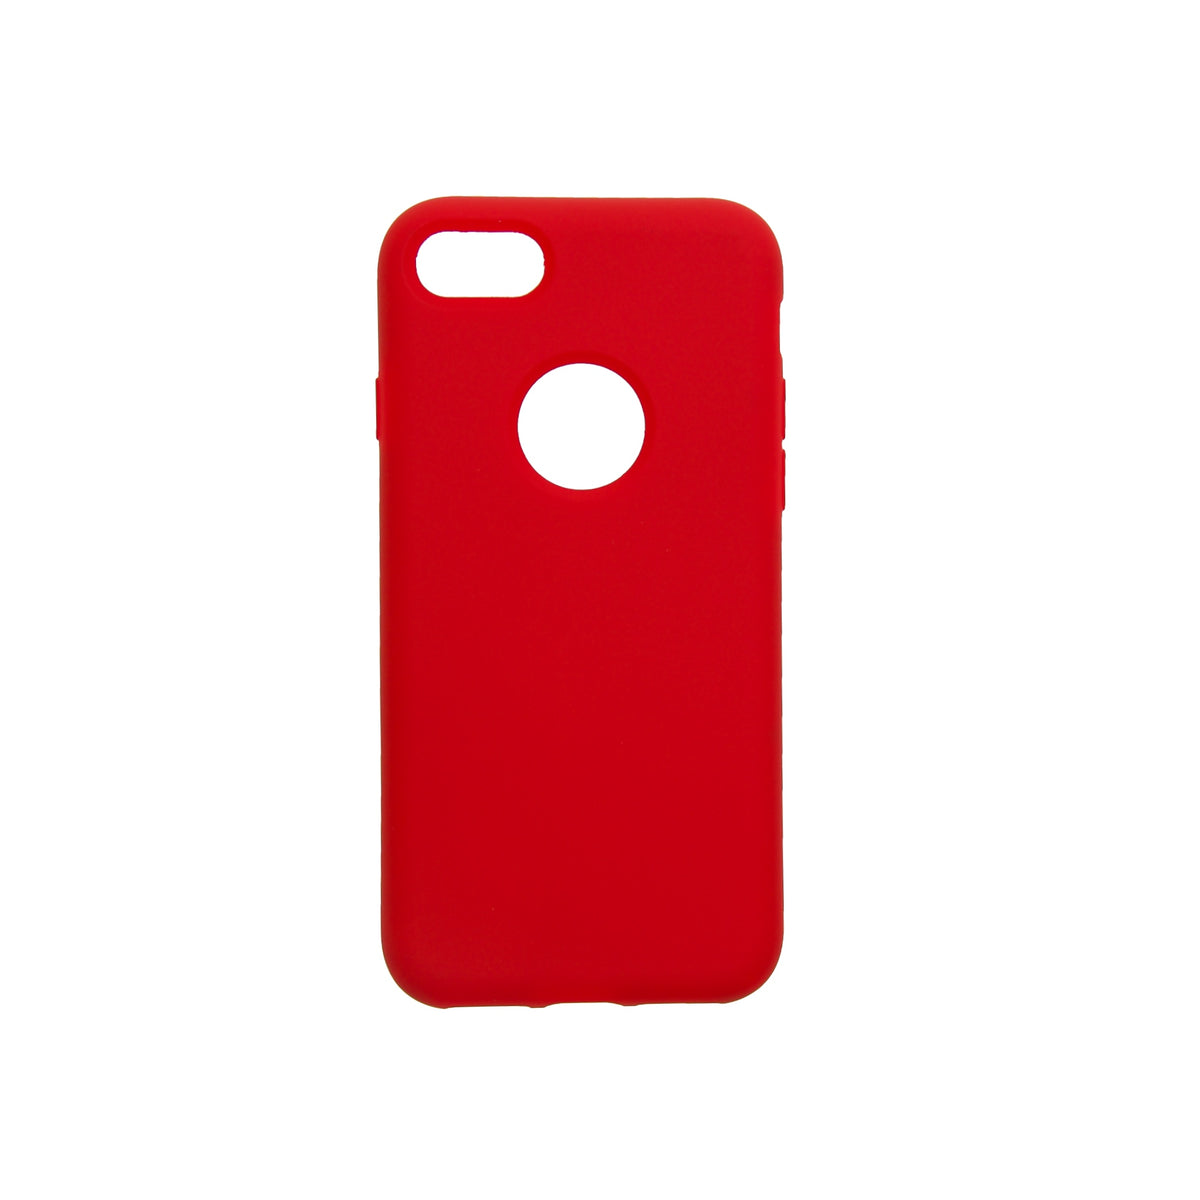 Estuche EL REY silicon rojo - iphone 6